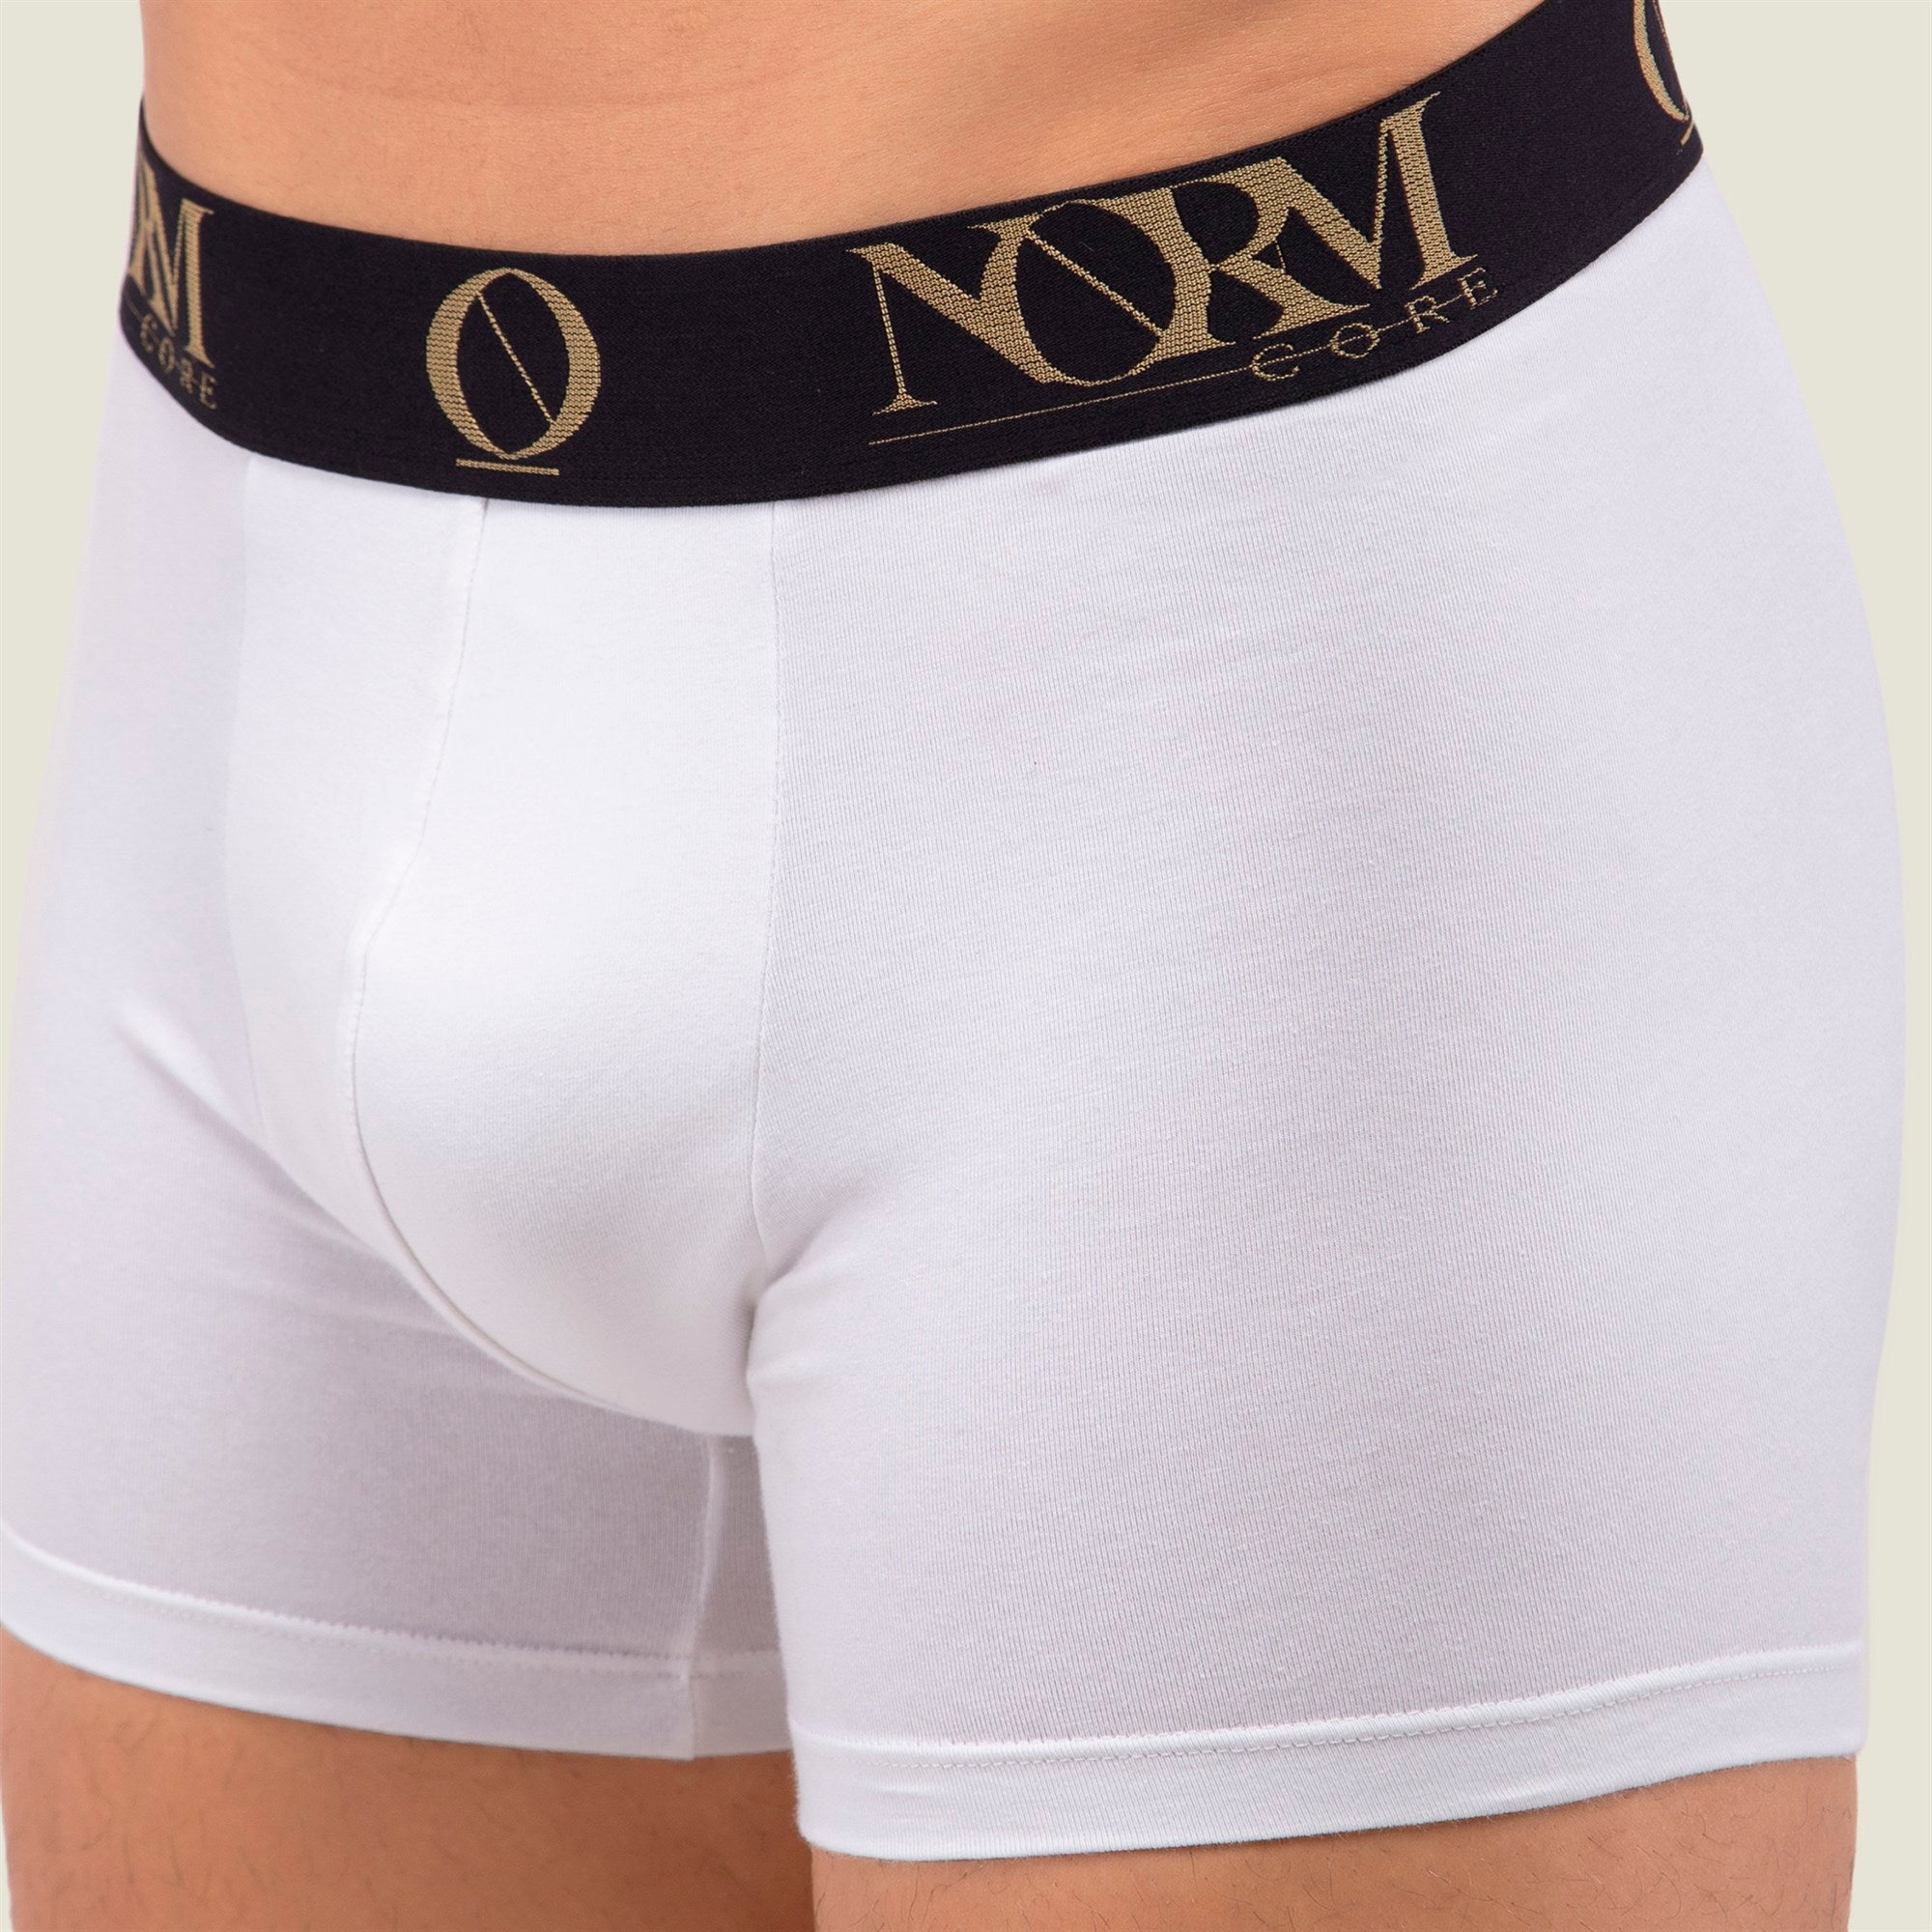 Normcore Cotton Innerwear - White Trunk with Gold Waistband Underwear